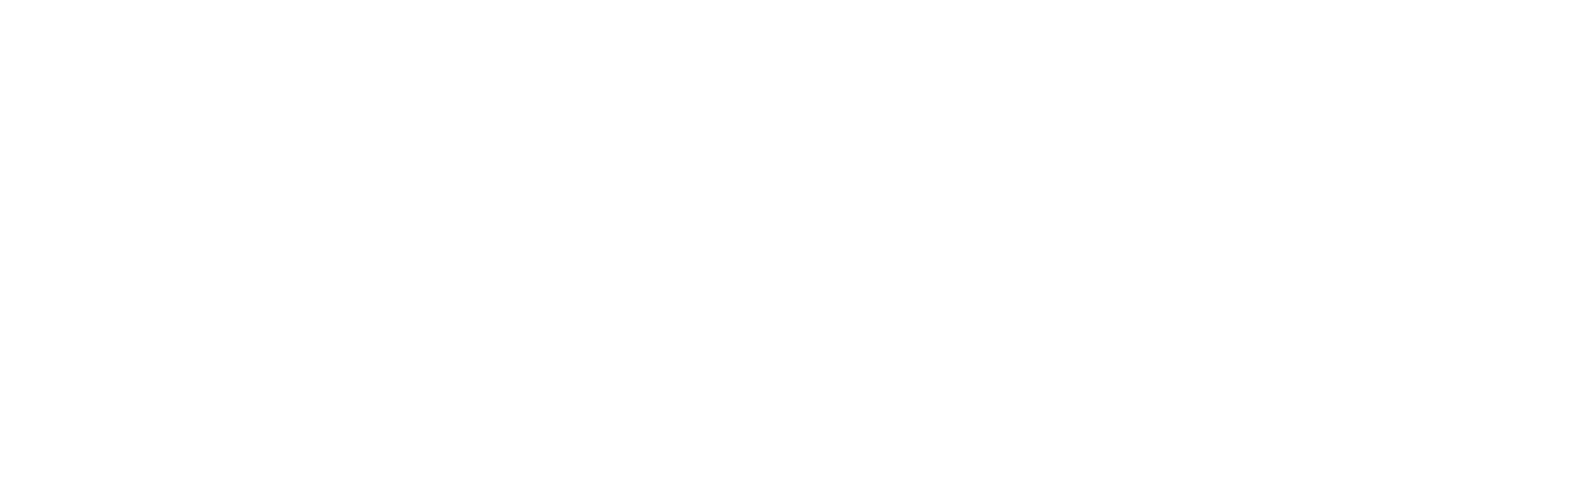 KDDI logo for dark backgrounds (transparent PNG)